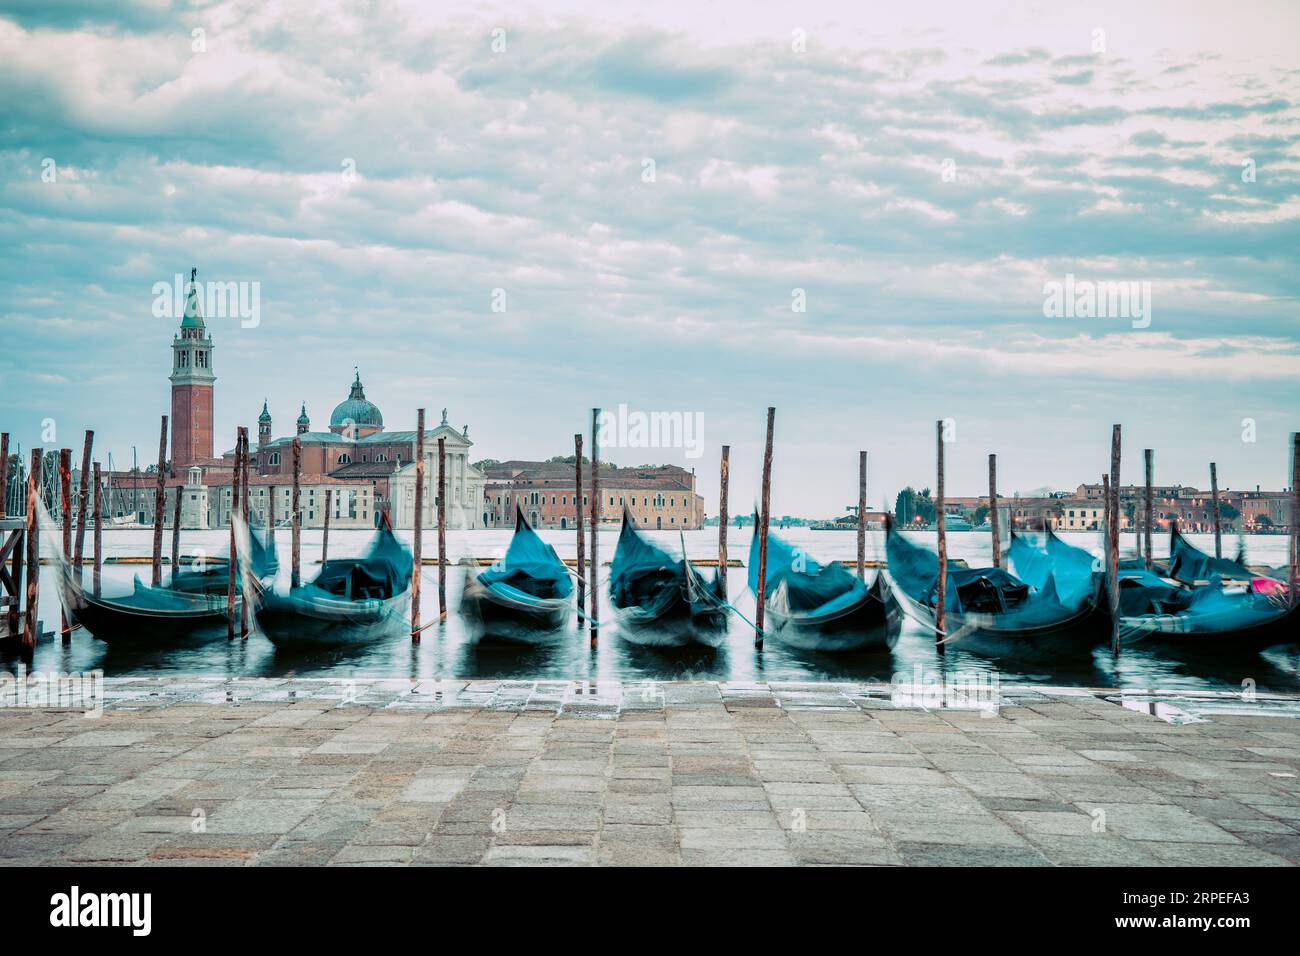 Photo avec gondoles amarrées sur le Grand Canal près de la place Saint Marc, à Venise en Italie avec l'église San Giorgio Maggiore en arrière-plan. Banque D'Images